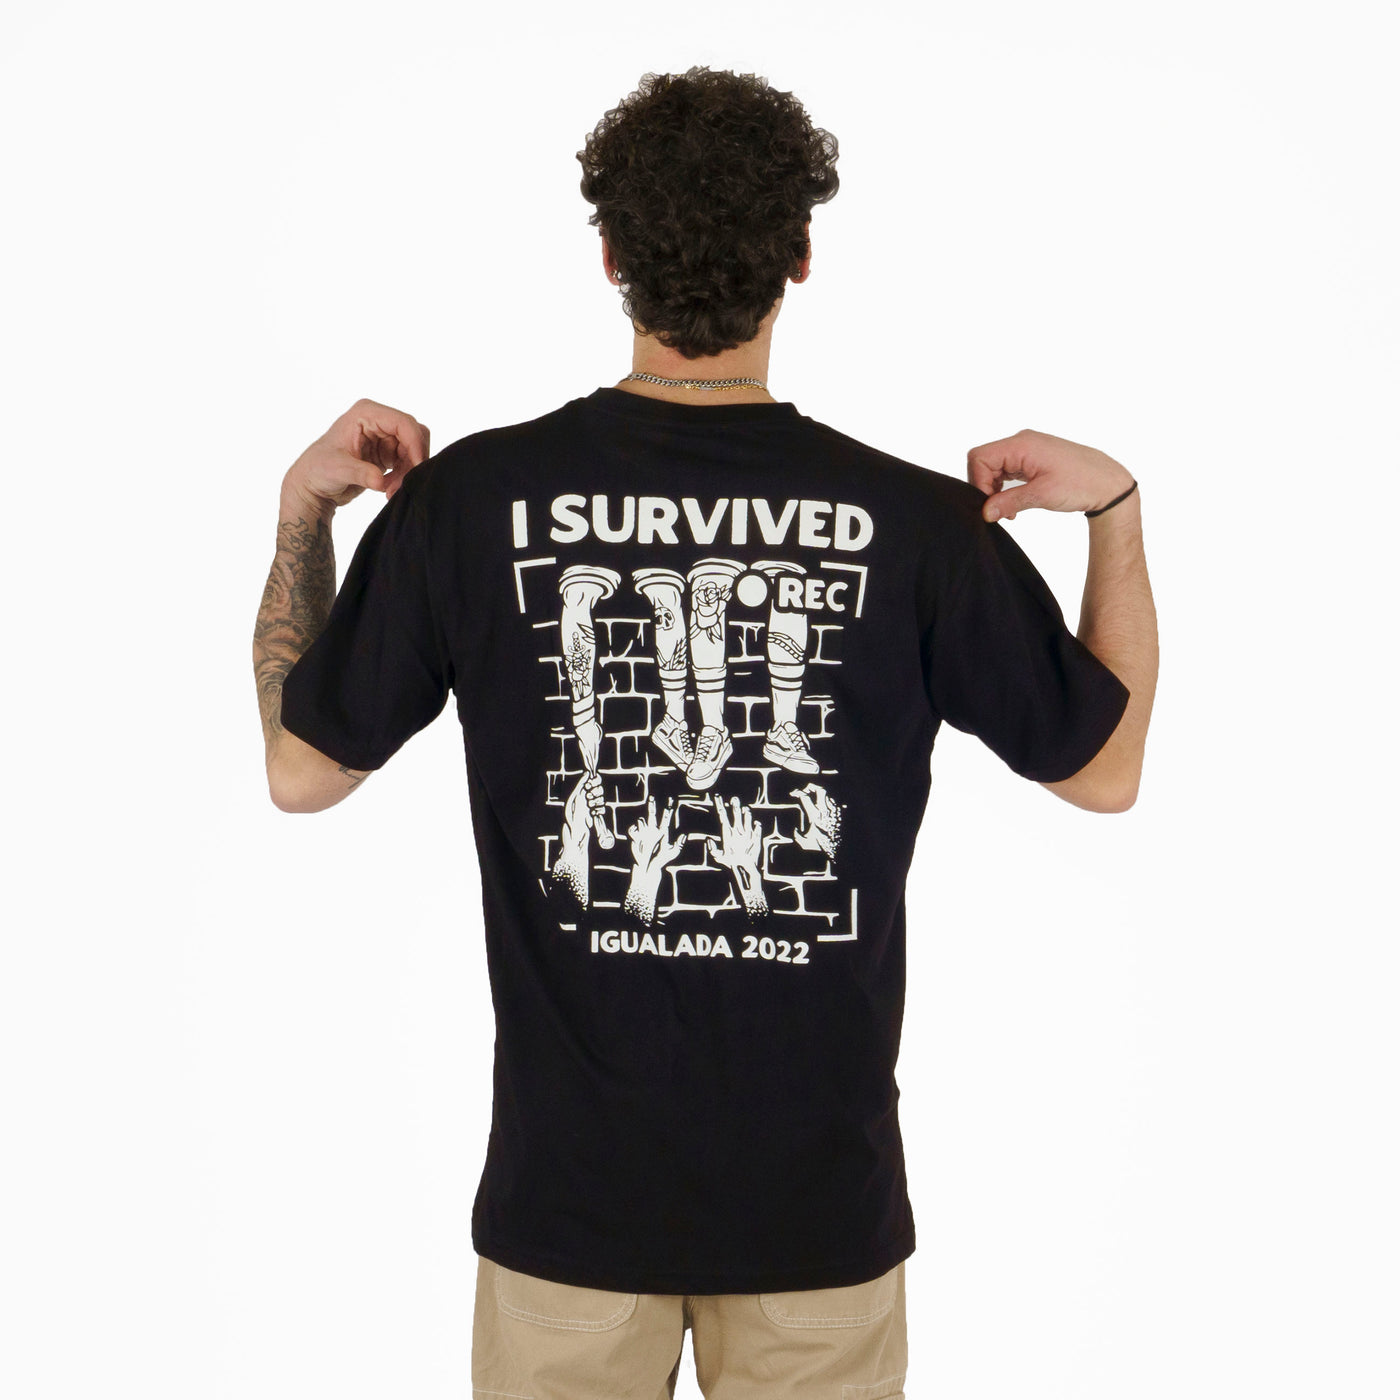 I Survived Rec - T-Shirt